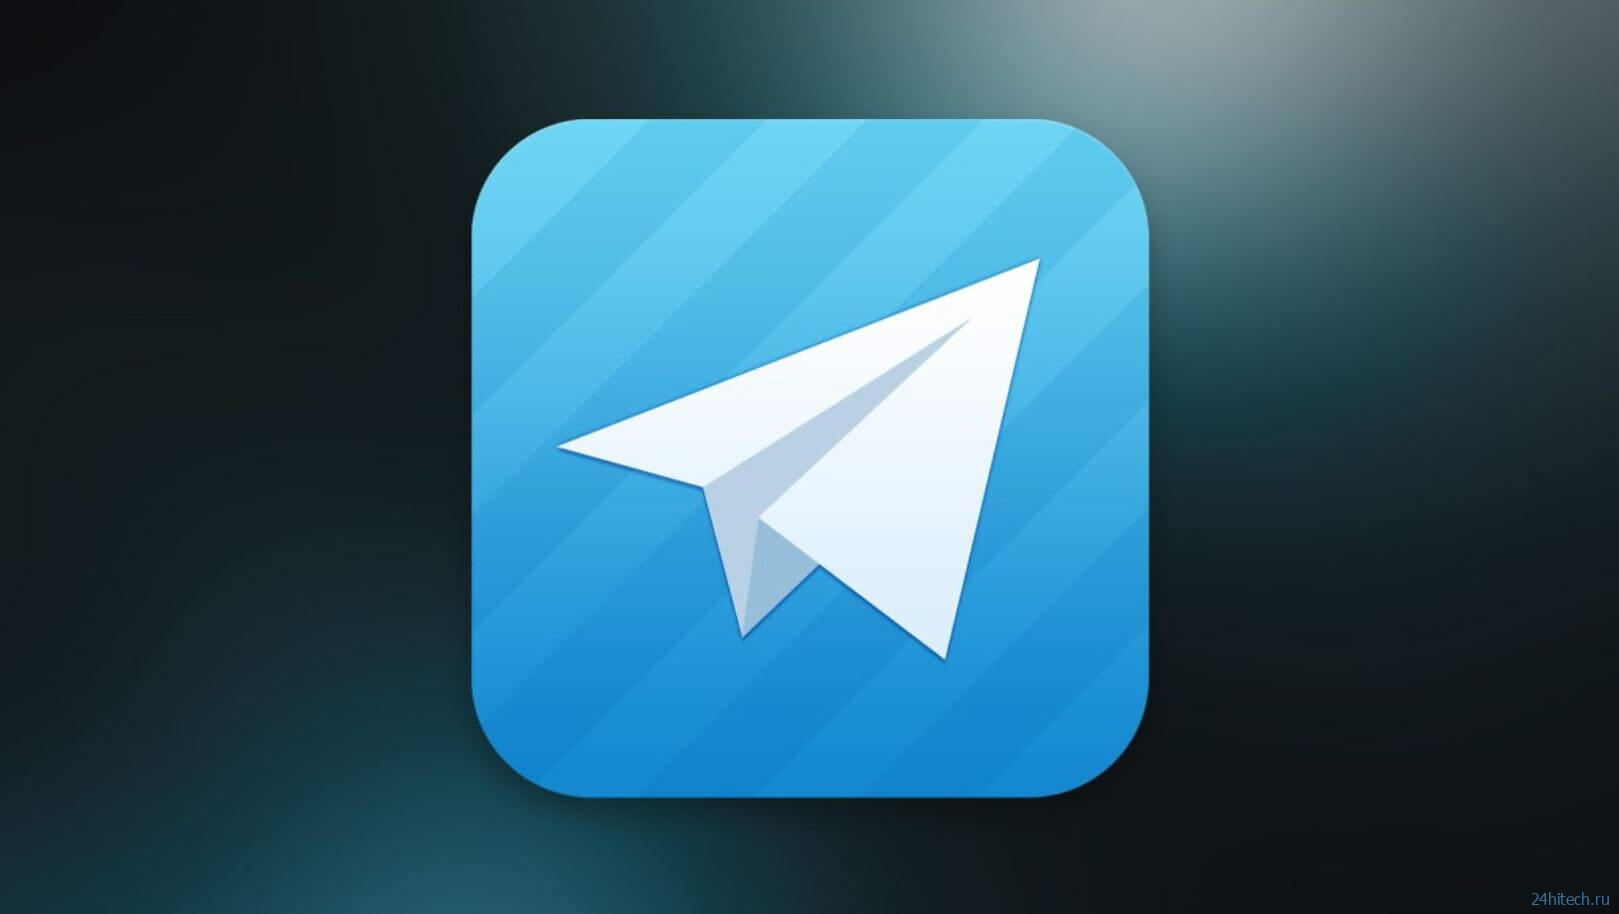 Вышло обновление Телеграм: менеджер загрузок, новое меню вложений и многое другое